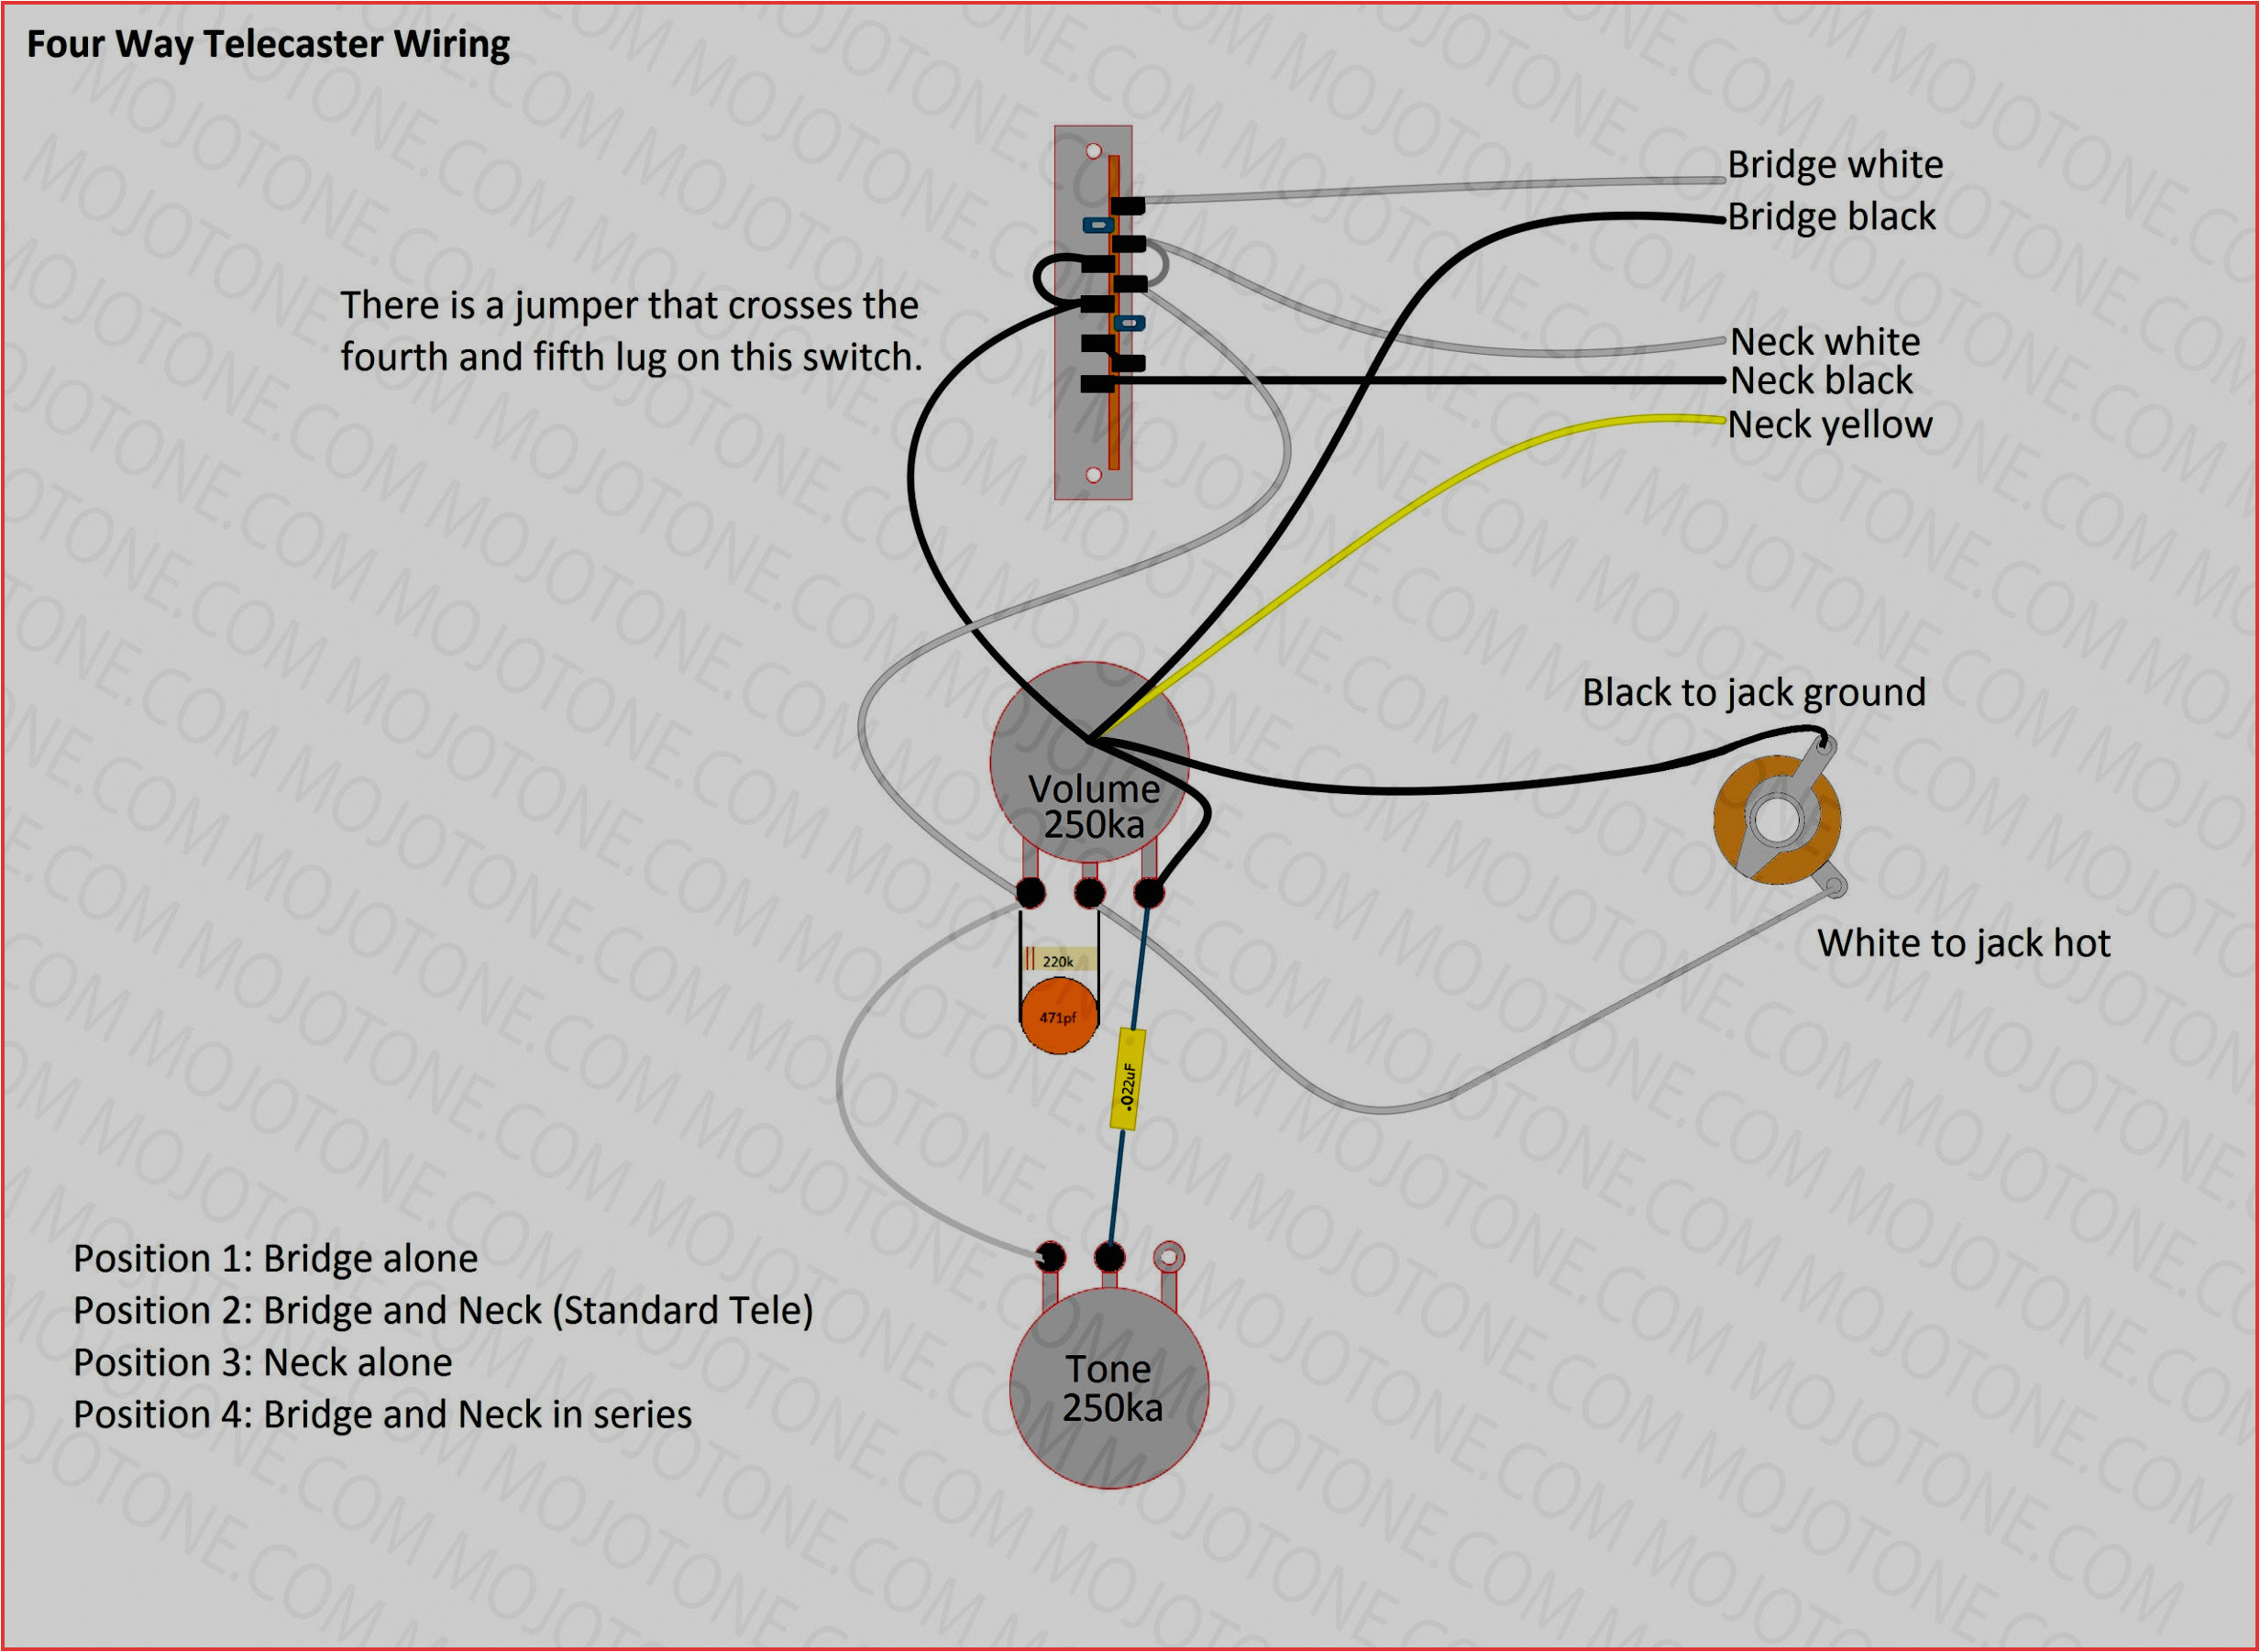 reliance csr wiring diagram reliance wiring diagrams scorpion reliance csr302 wiring diagram reliance wiring diagrams scorpion